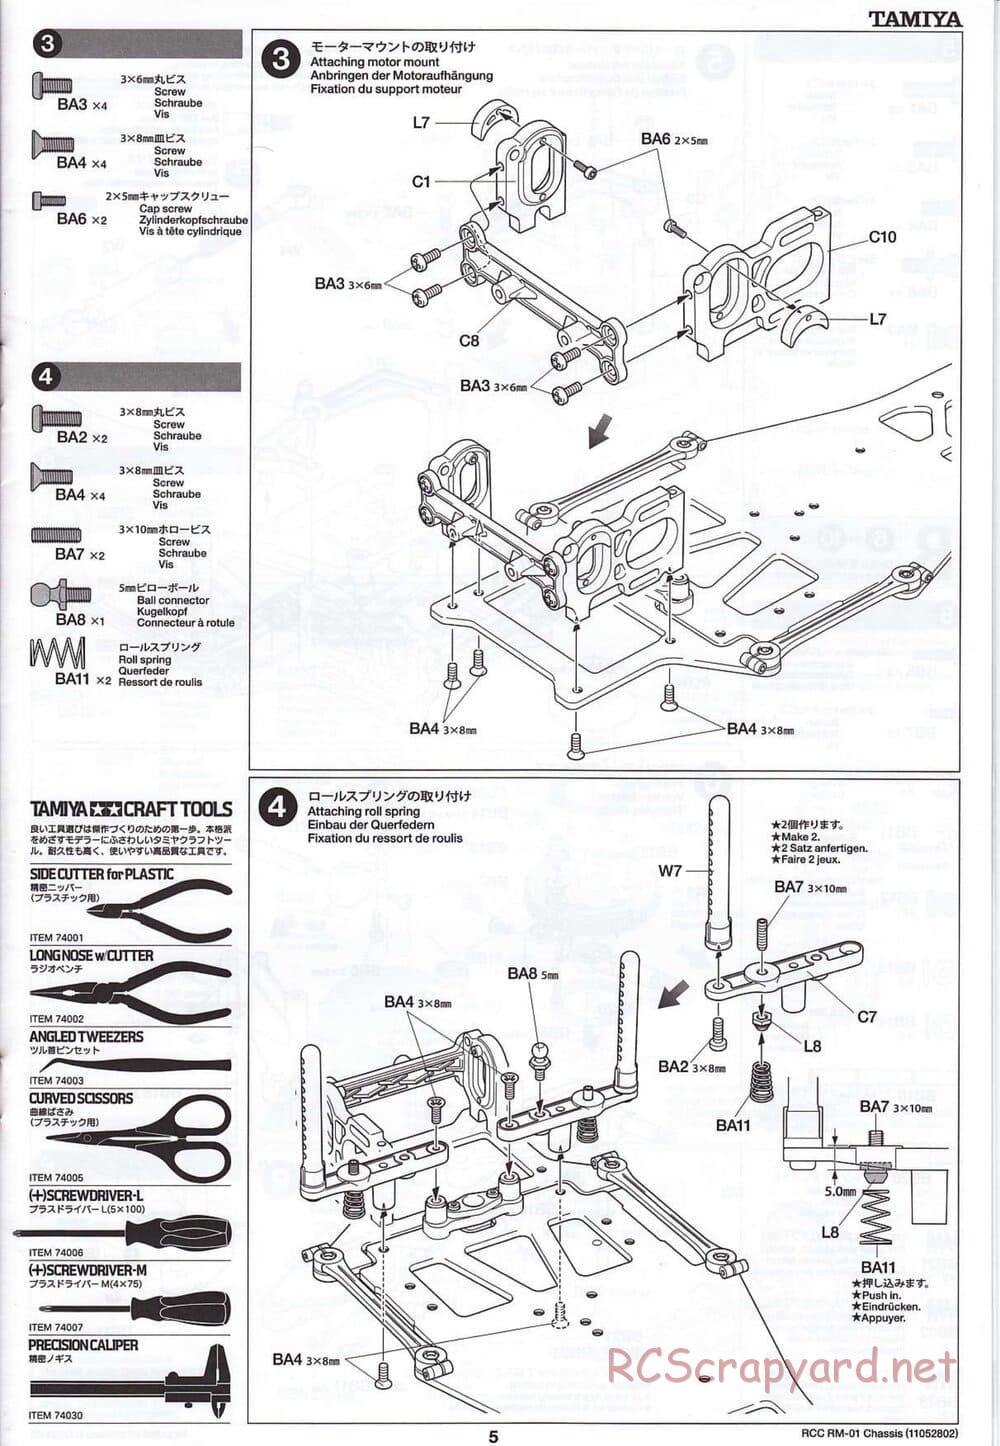 Tamiya - TA04-SS Chassis - Manual - Page 5